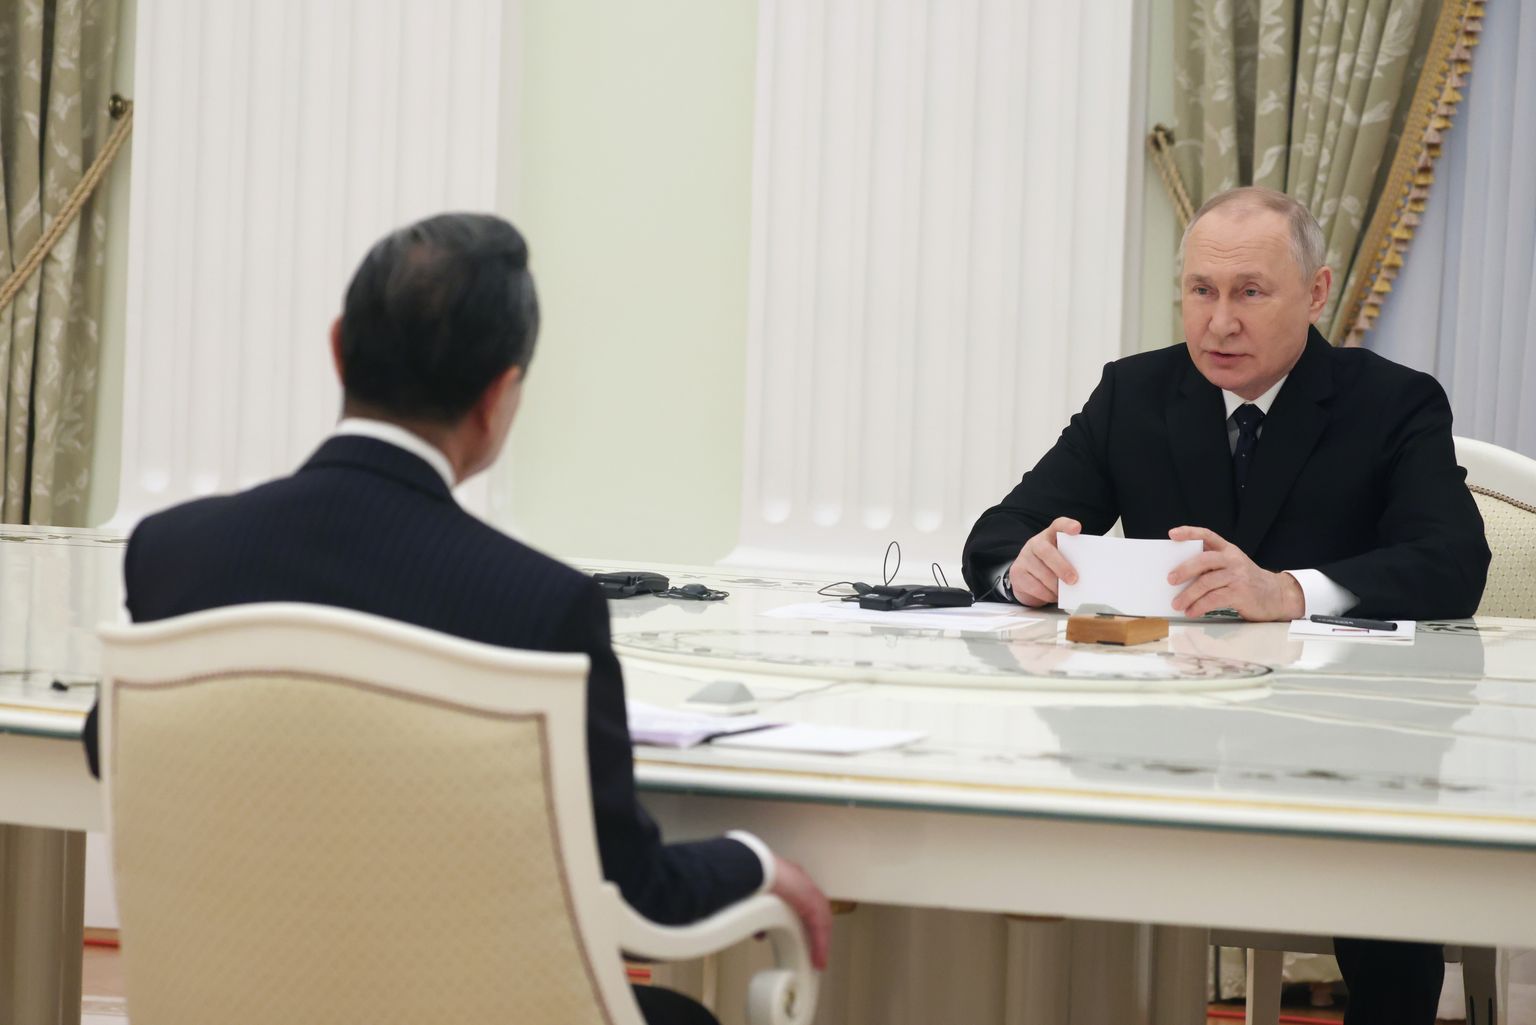 Venemaa president  Vladimir Putin kohtus 22. veebruaril 2023 Moskvas Kremlis Hiina kõrge poliitiku Wang Yiga. Nad istusid kuulsa valge laua taga, kuid Putin ei hoidnud enam distantsi